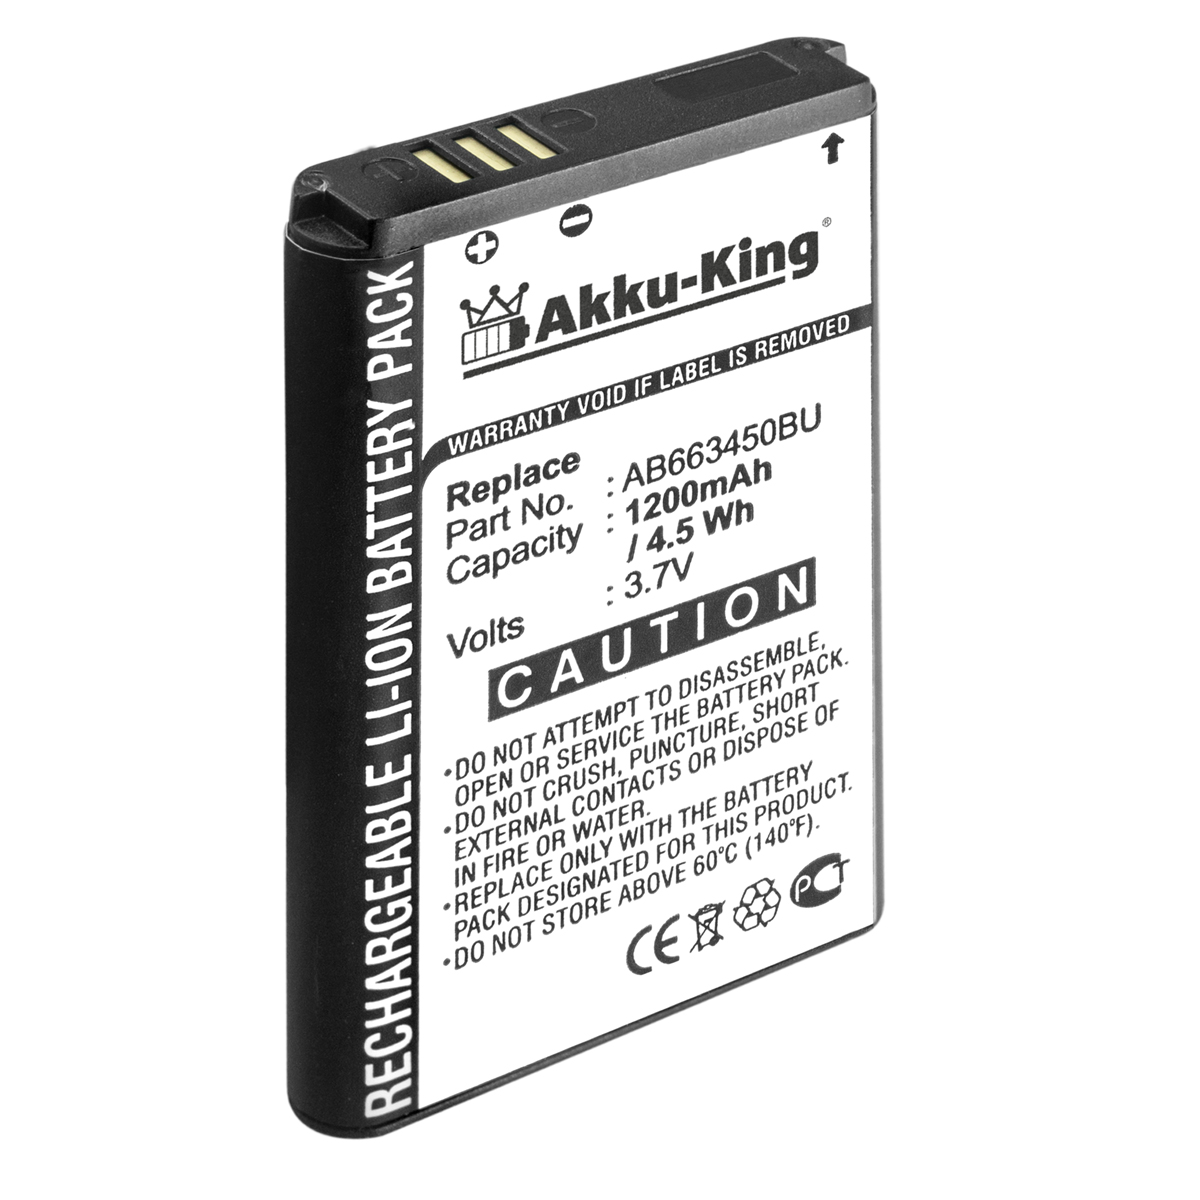 AKKU-KING Akku kompatibel mit Samsung AB663450BE 3.7 1200mAh Handy-Akku, Li-Ion Volt